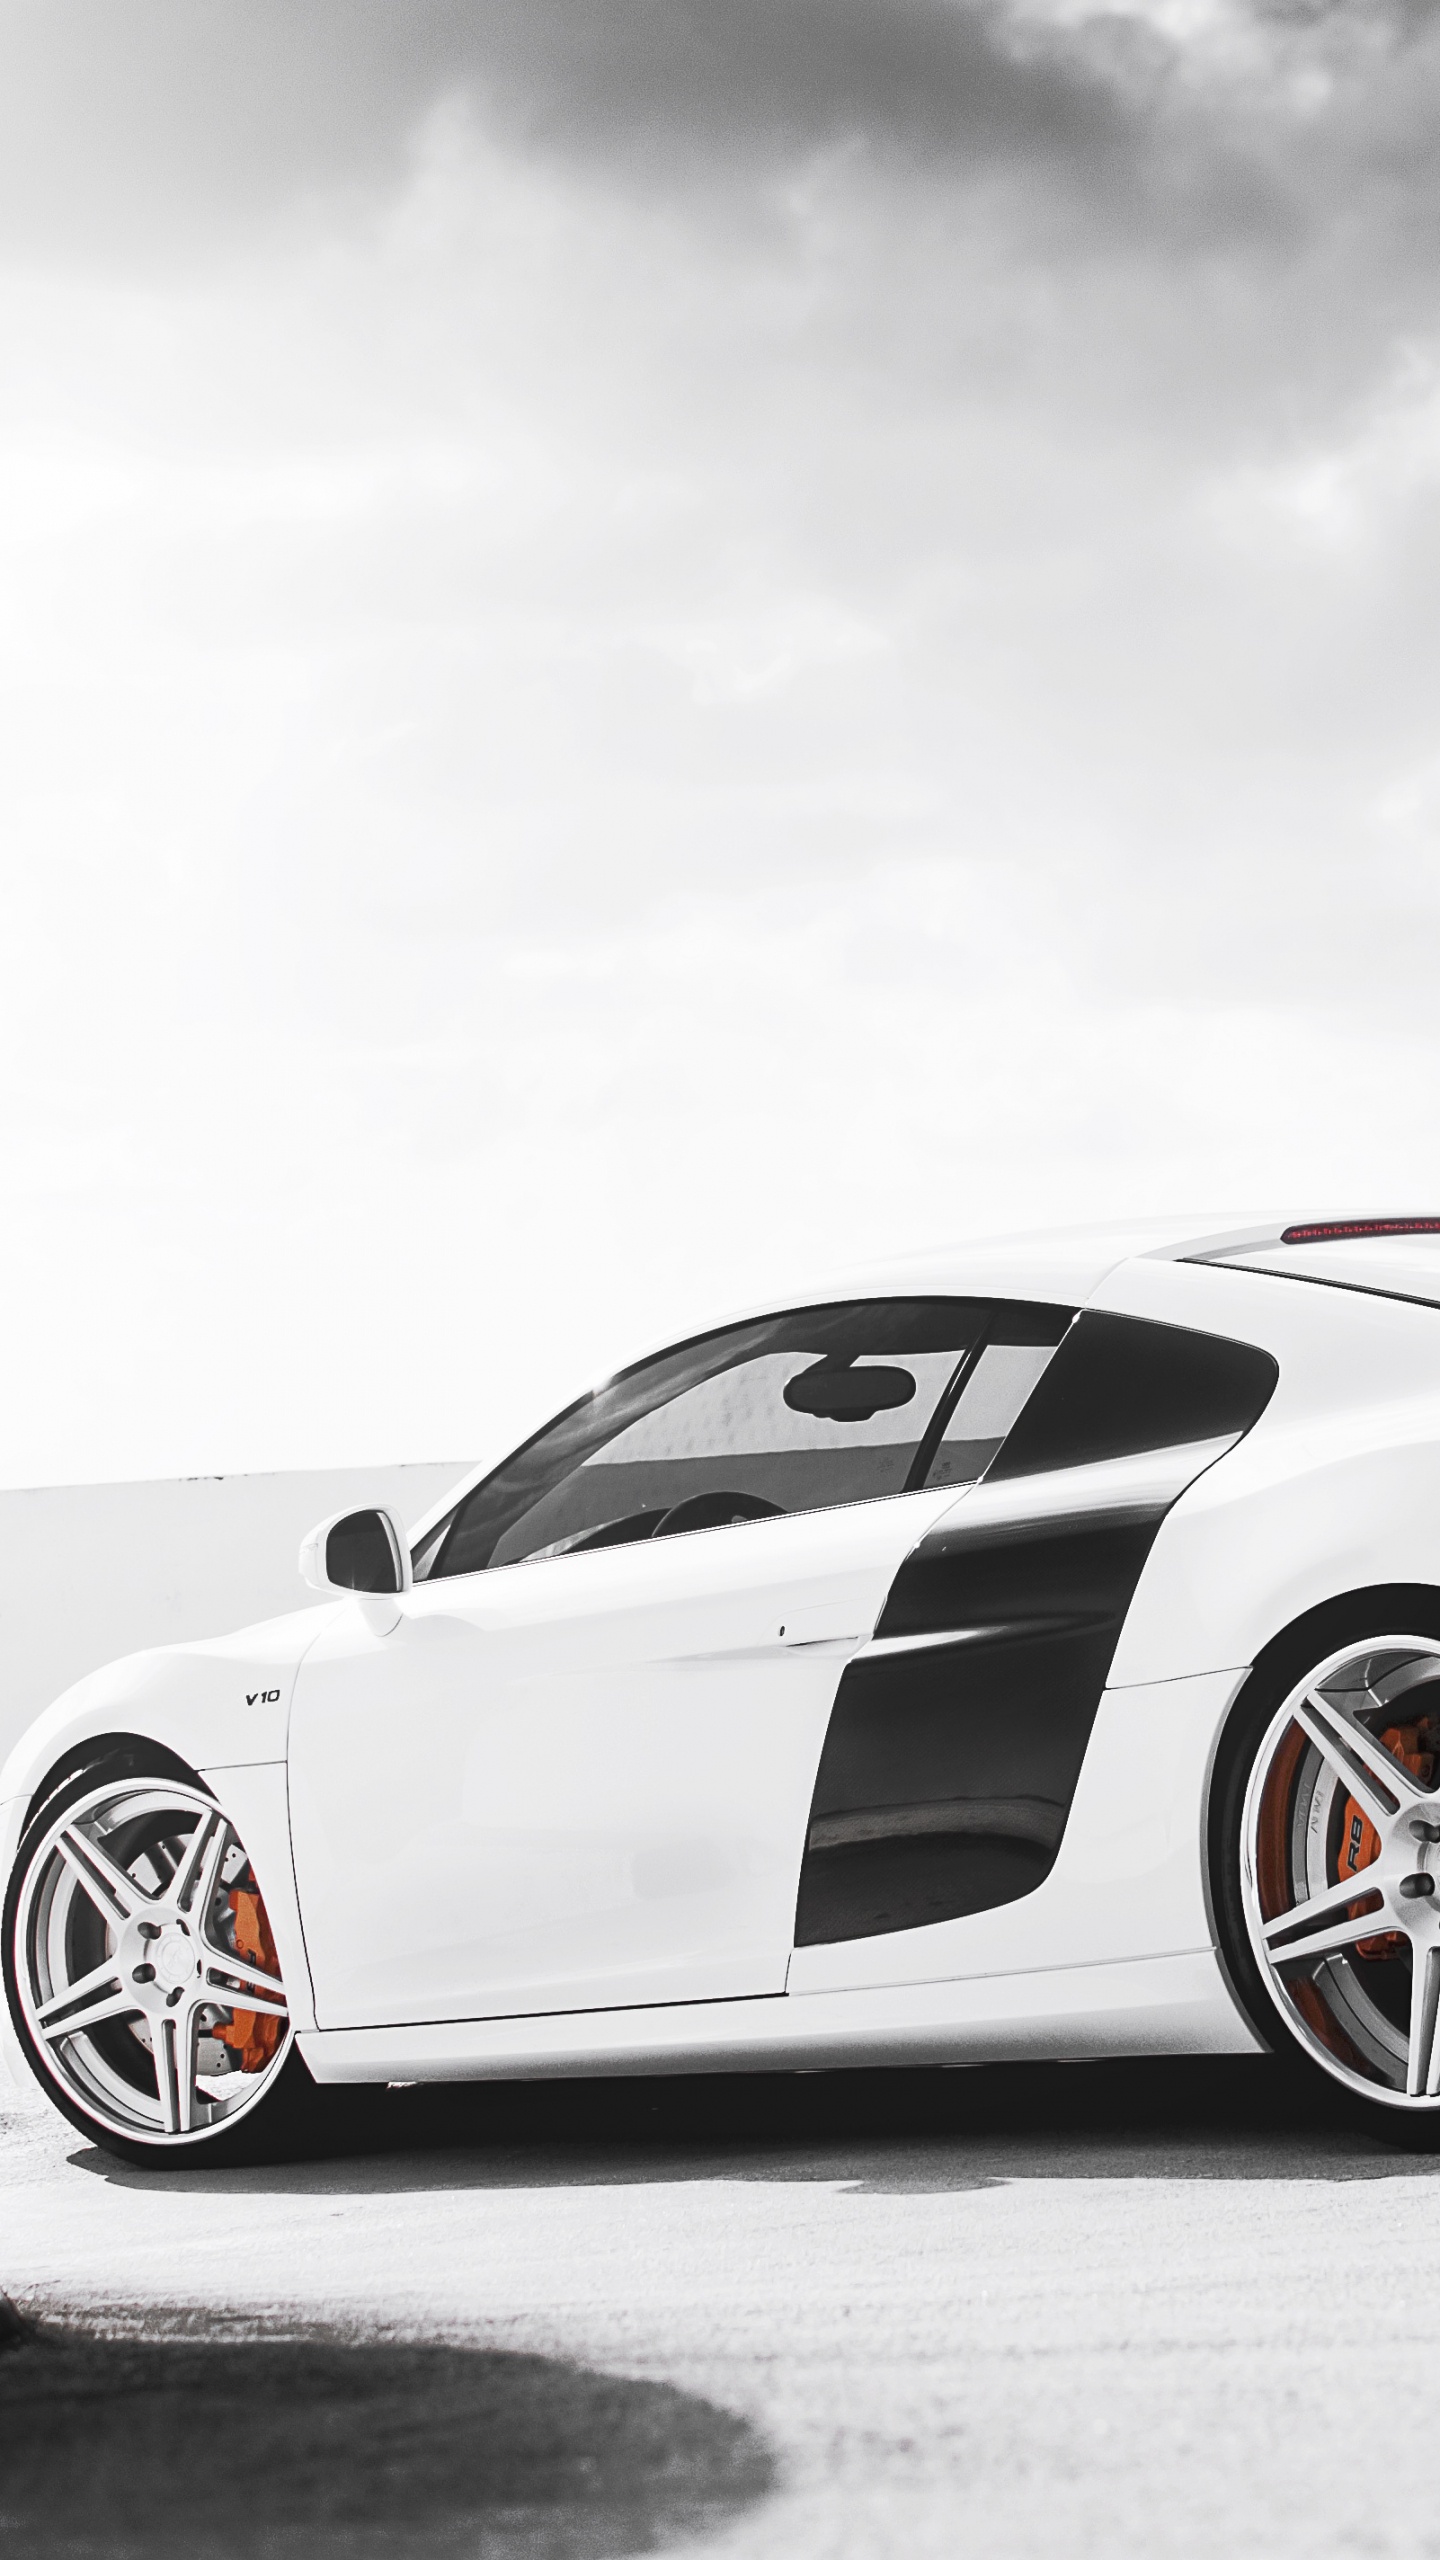 Weißer Porsche 911 Auf Schwarzer Oberfläche. Wallpaper in 1440x2560 Resolution